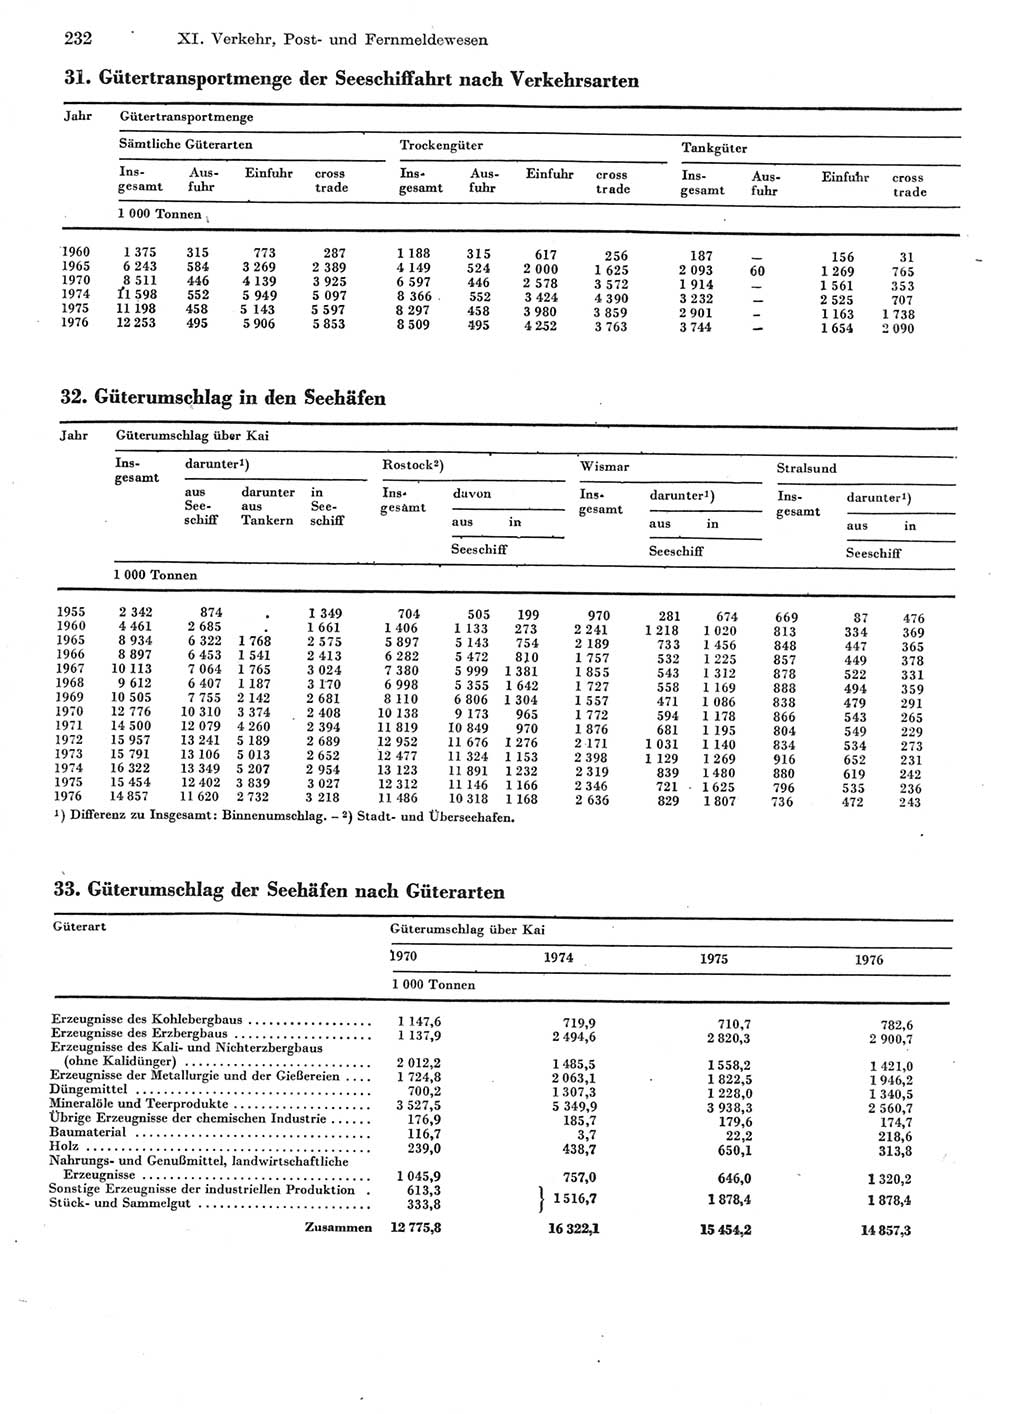 Statistisches Jahrbuch der Deutschen Demokratischen Republik (DDR) 1977, Seite 232 (Stat. Jb. DDR 1977, S. 232)